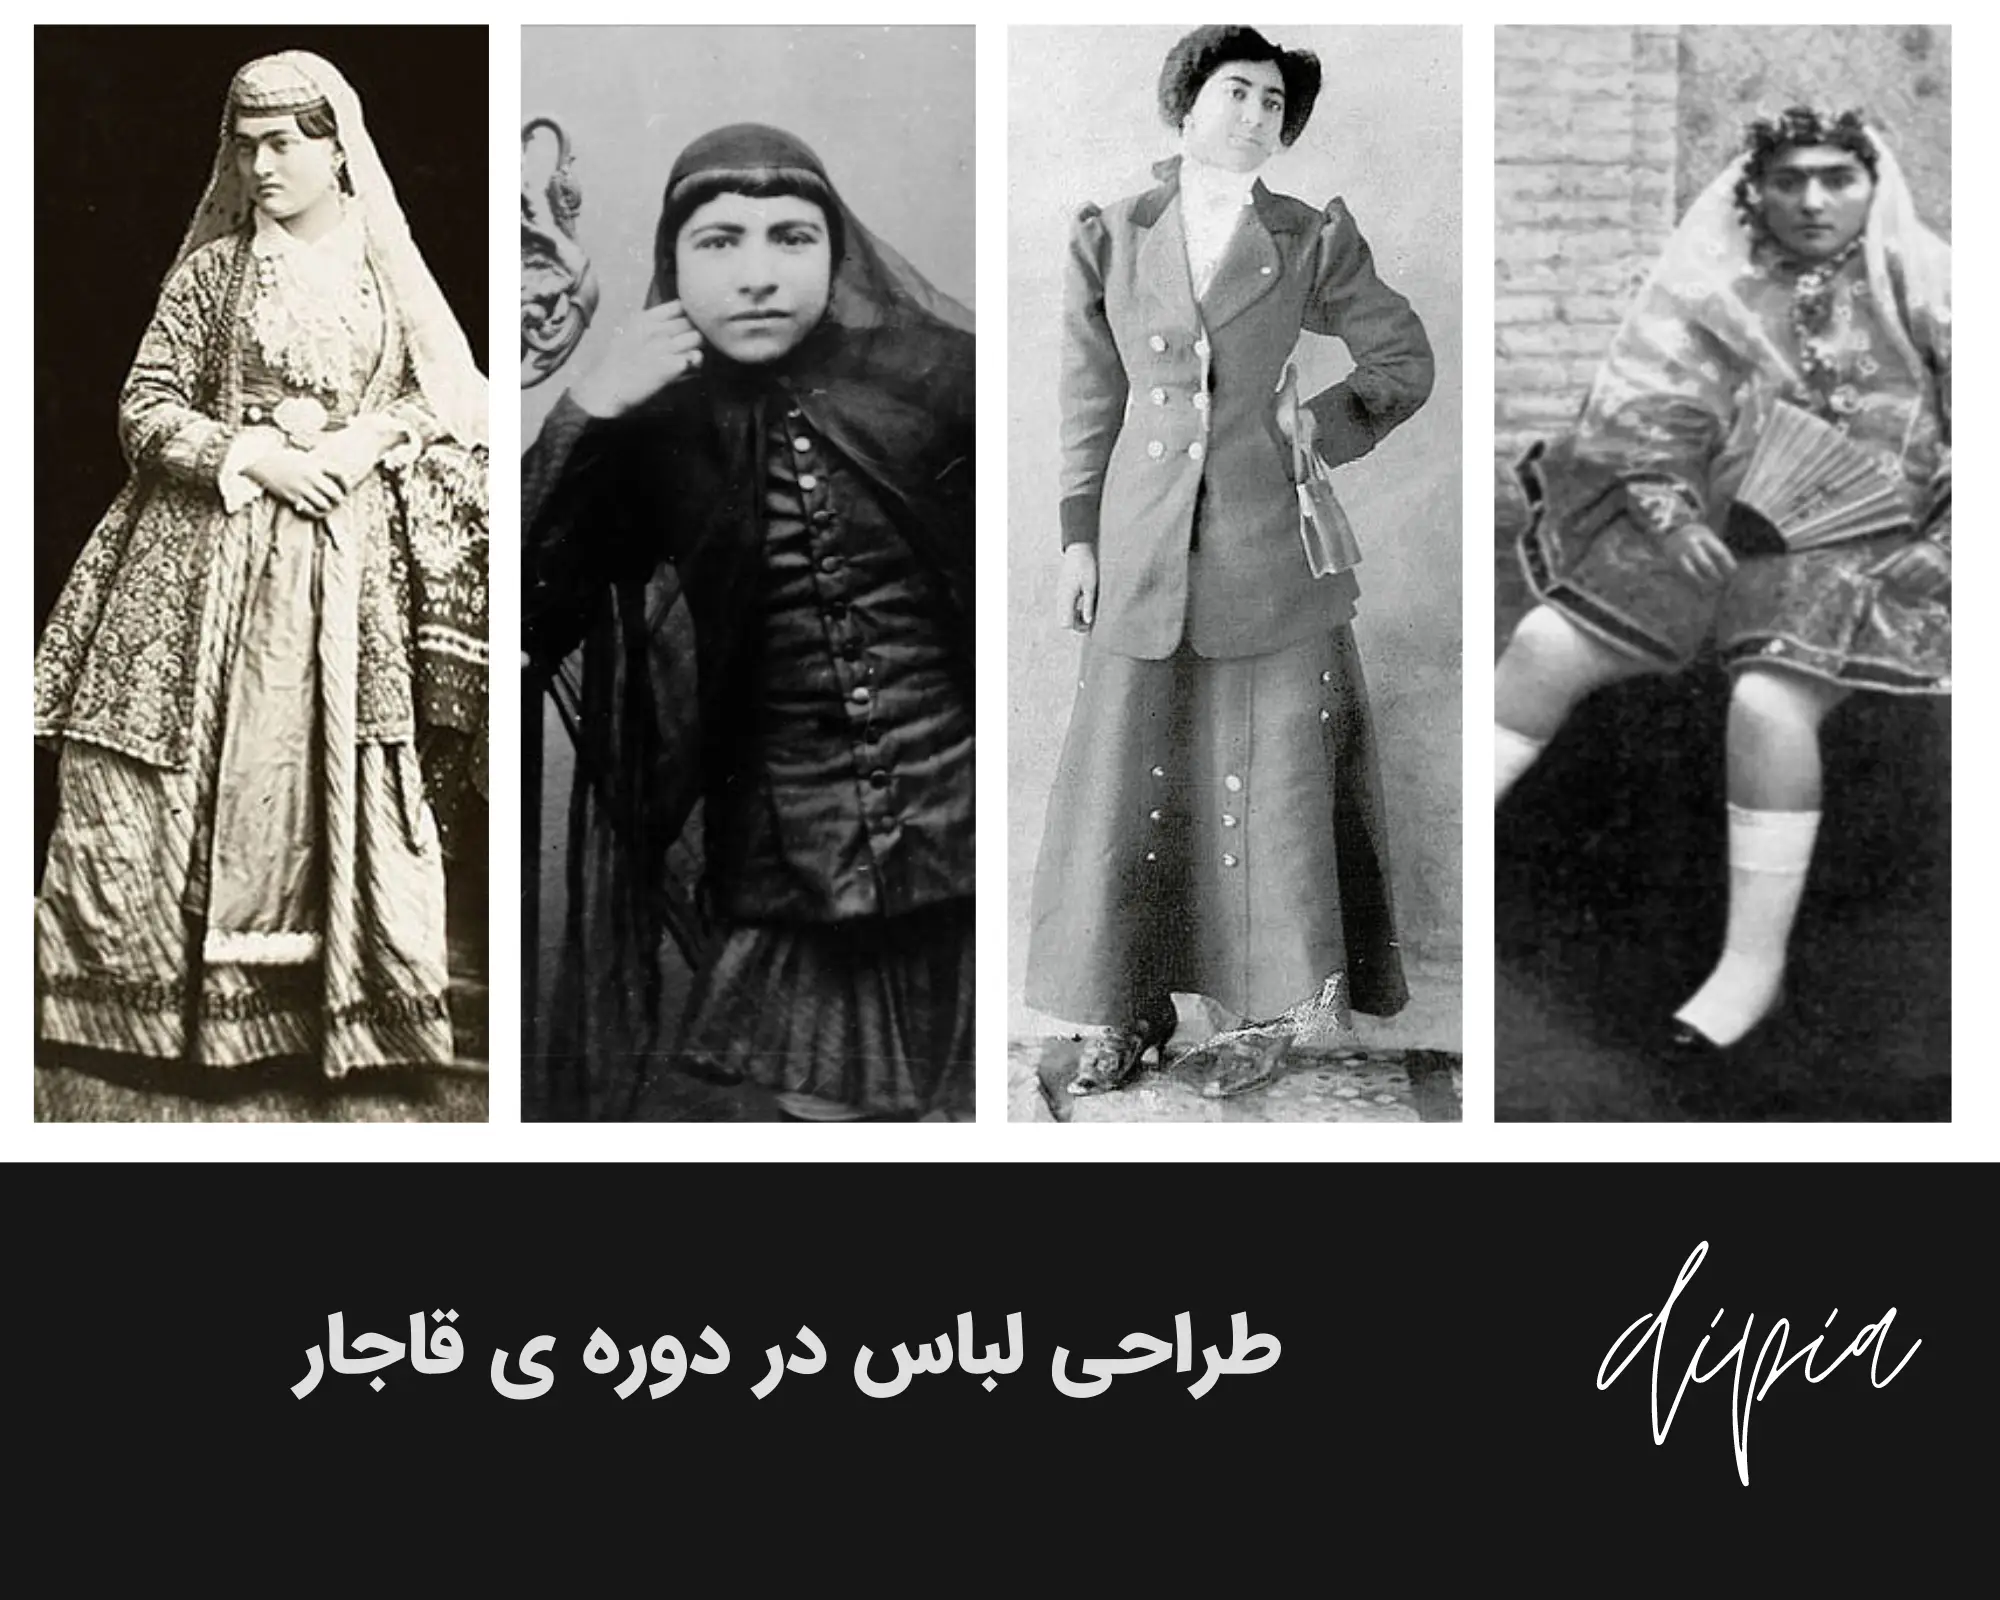 تاریخچه طراحی لباس و مد در ایران